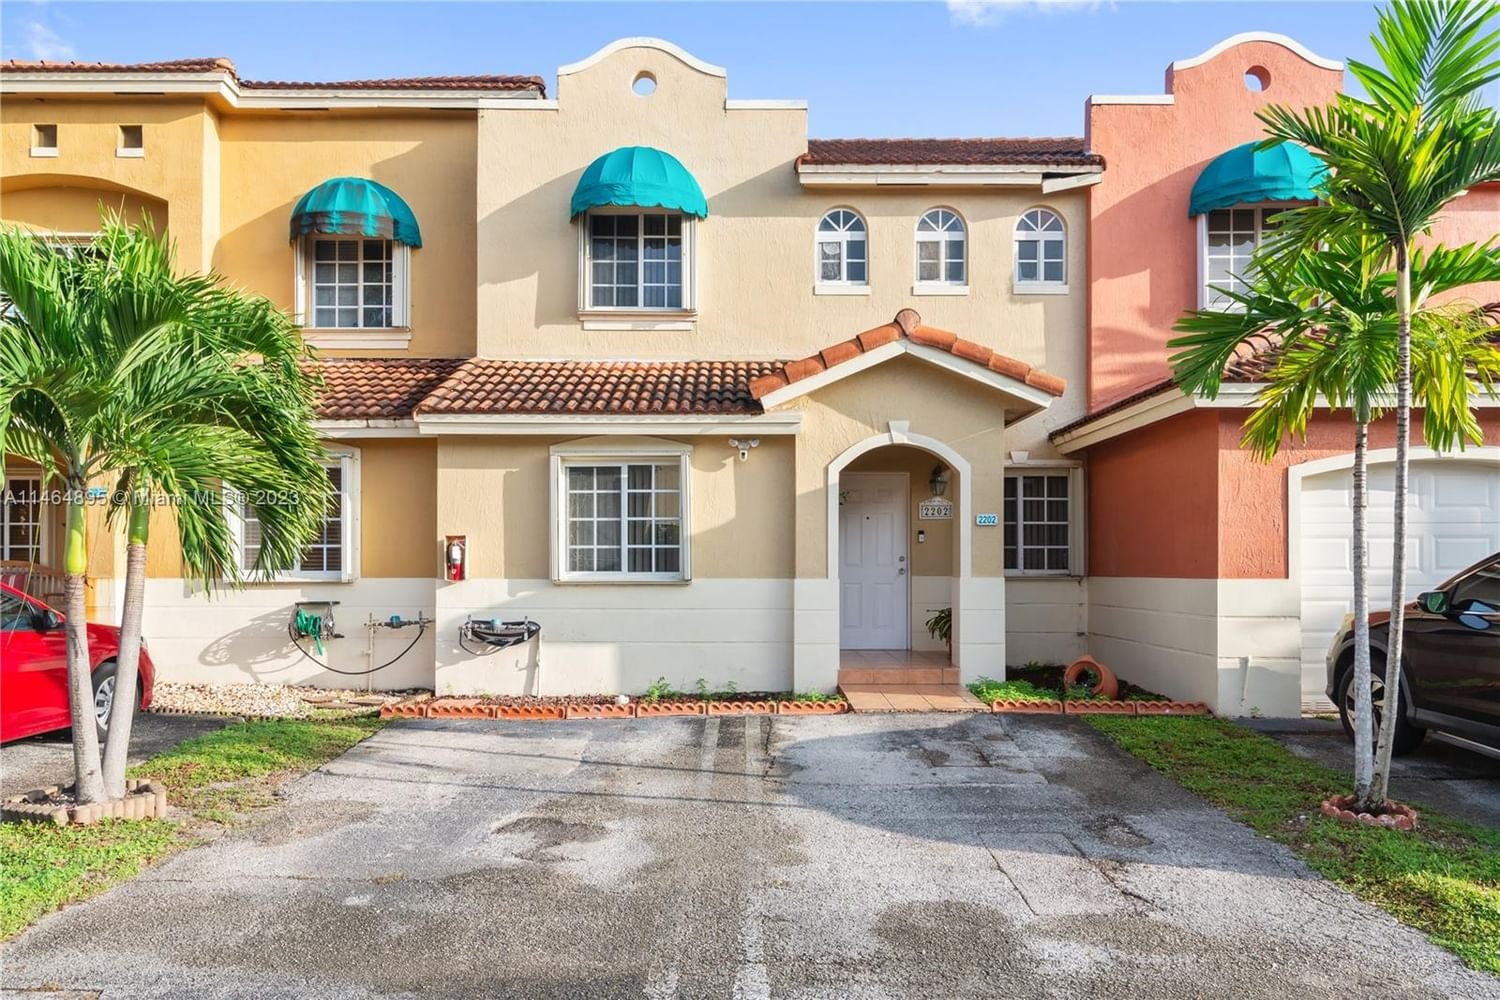 Real estate property located at 7025 173rd Dr #2202, Miami-Dade County, BONITA GOLF VIEW TOWNVILLA, Hialeah, FL